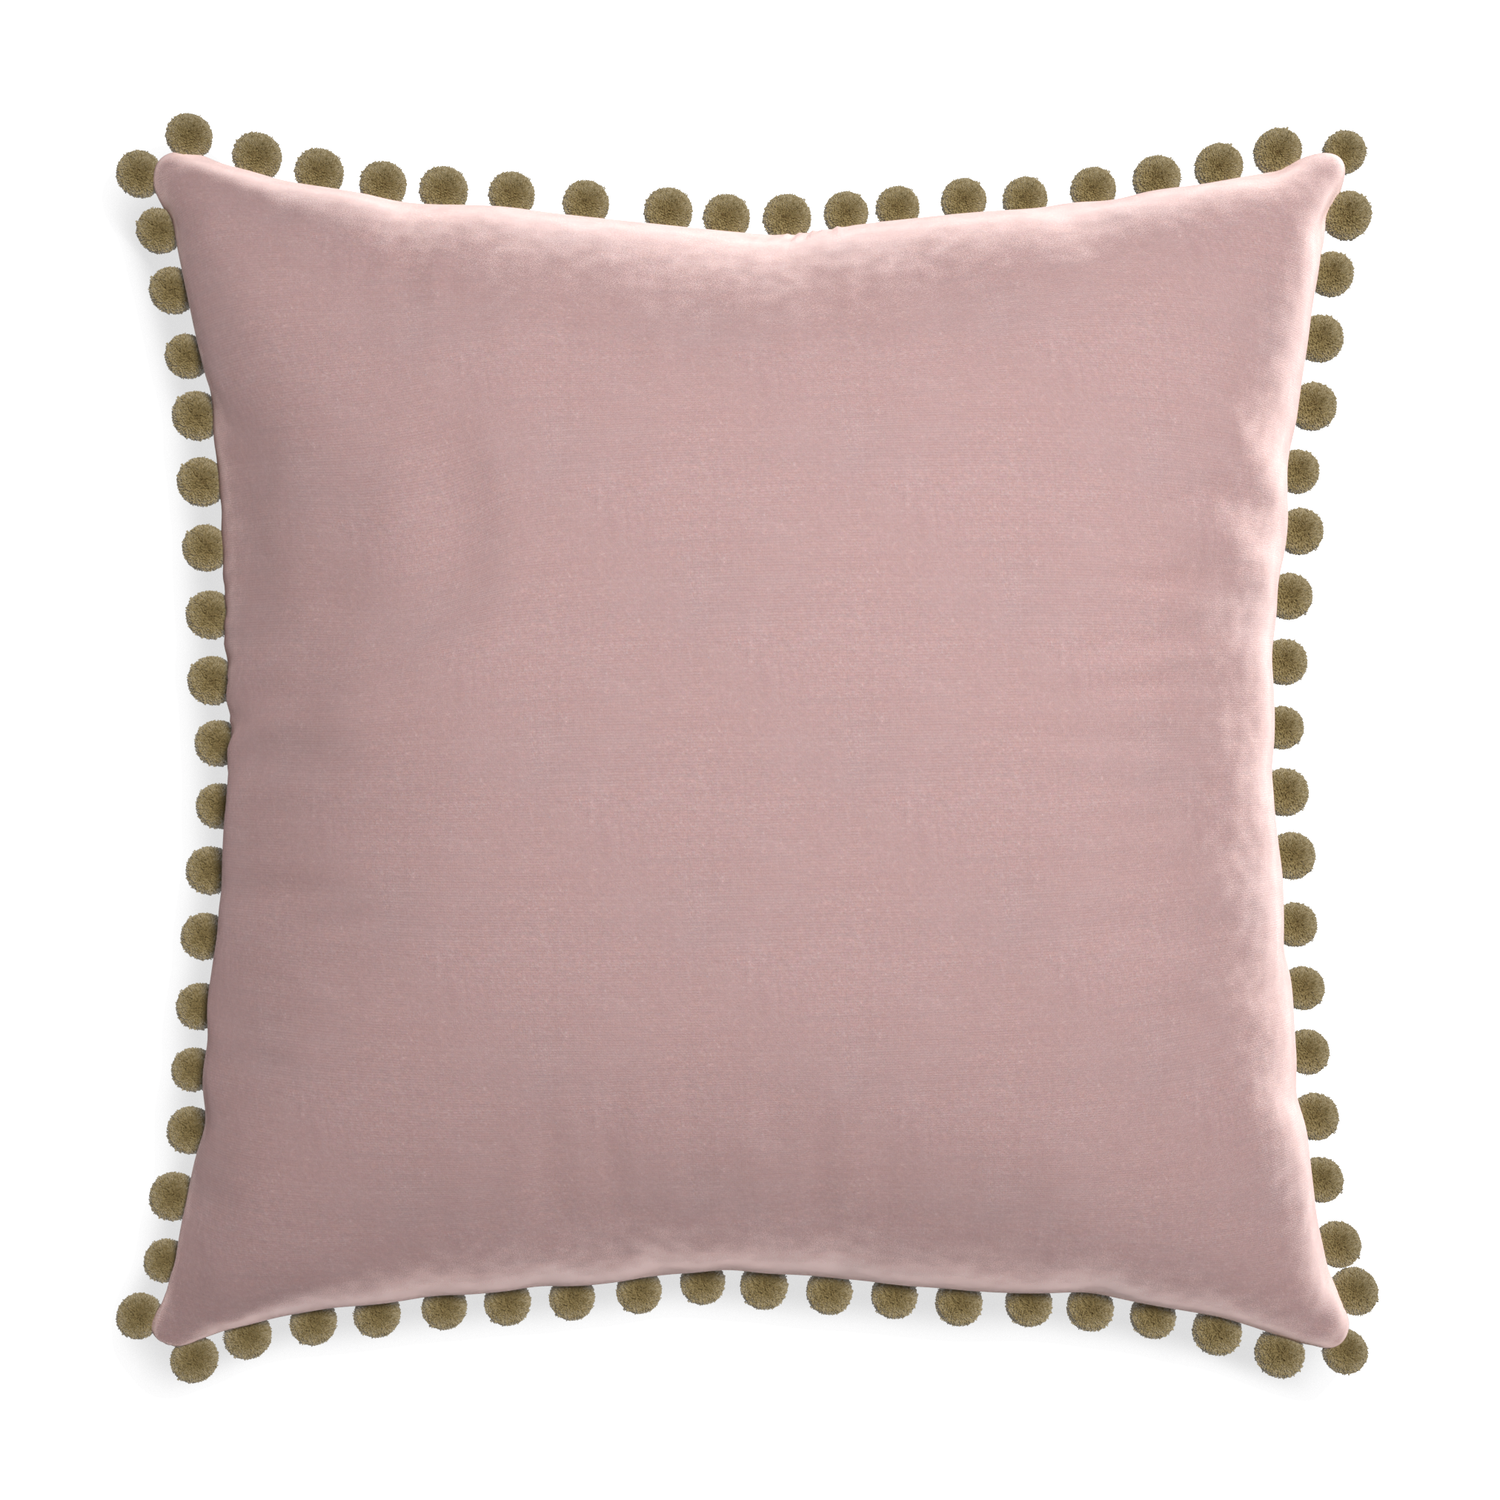 Euro-sham mauve velvet custom pillow with olive pom pom on white background